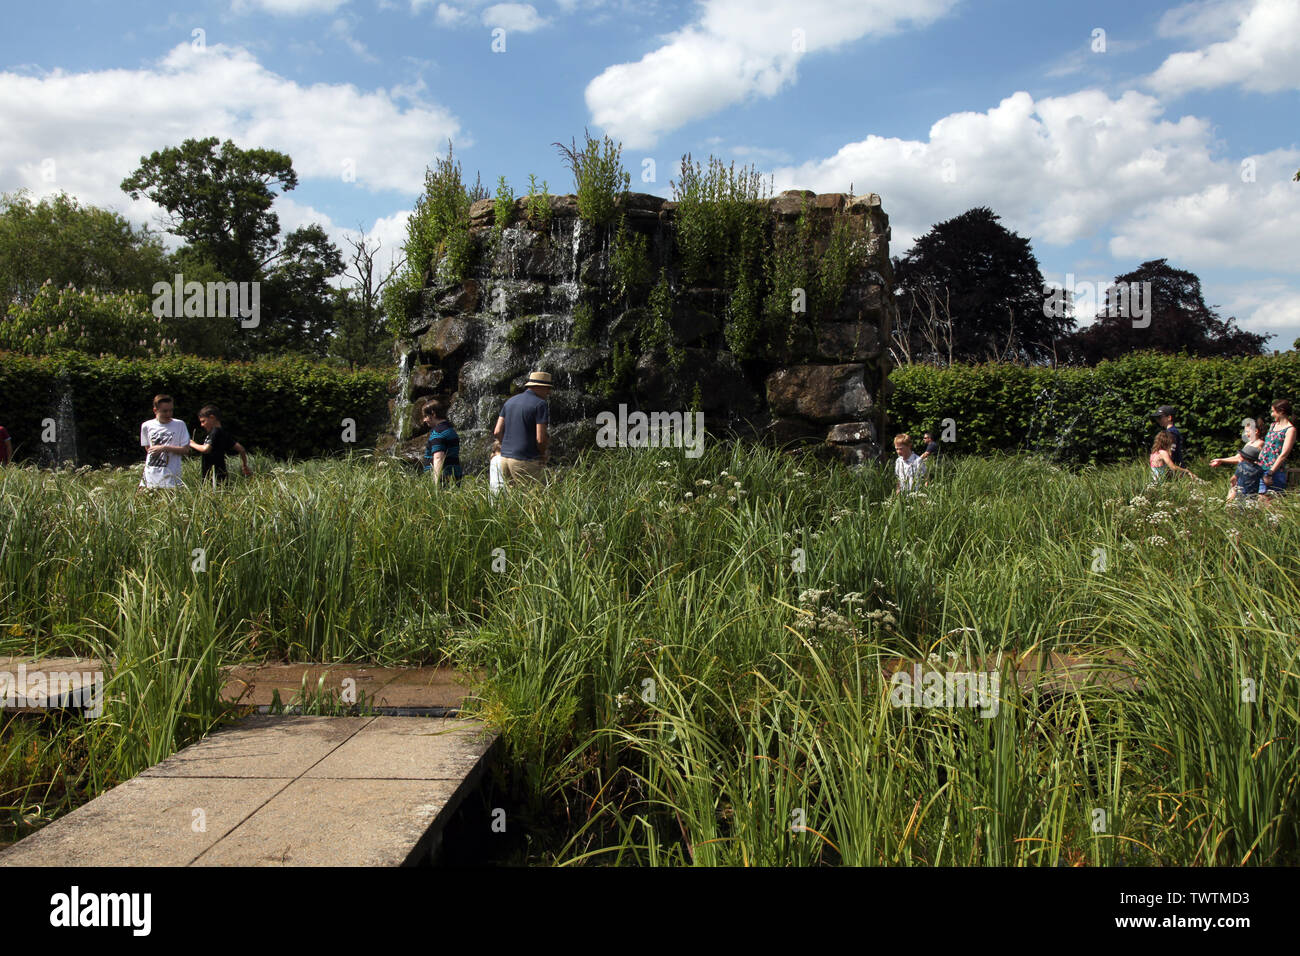 Le château de Hever, Edenbridge, Kent, UK - les gens à jouer sur le jardin d'eau à Hever Castle dans le soleil, le jour, 2019 Banque D'Images